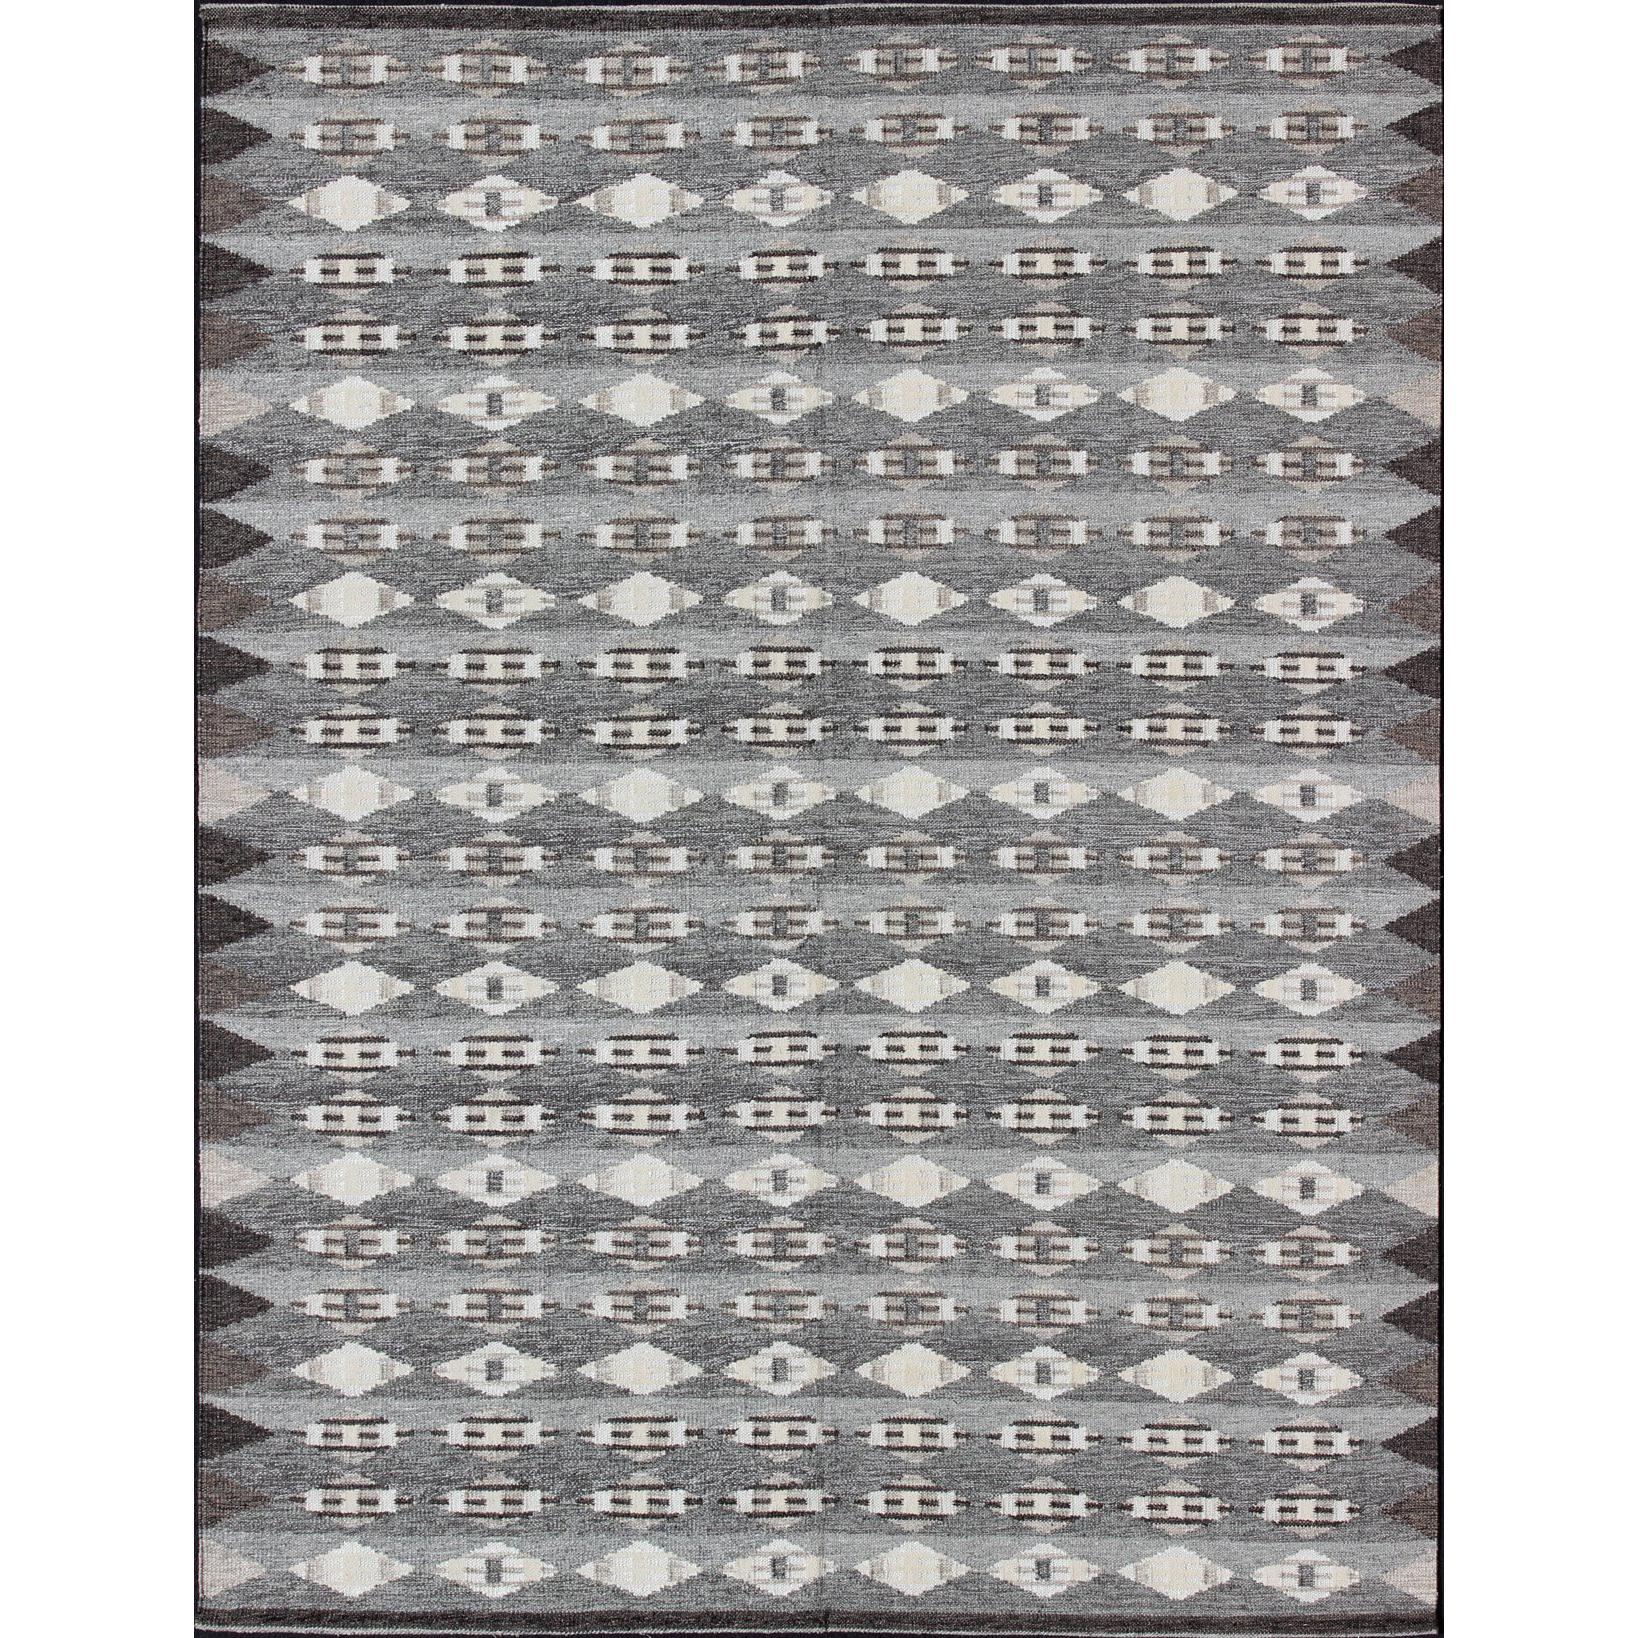 Grand tapis moderne scandinave/suédois à motifs géométriques en gris et marron  en vente